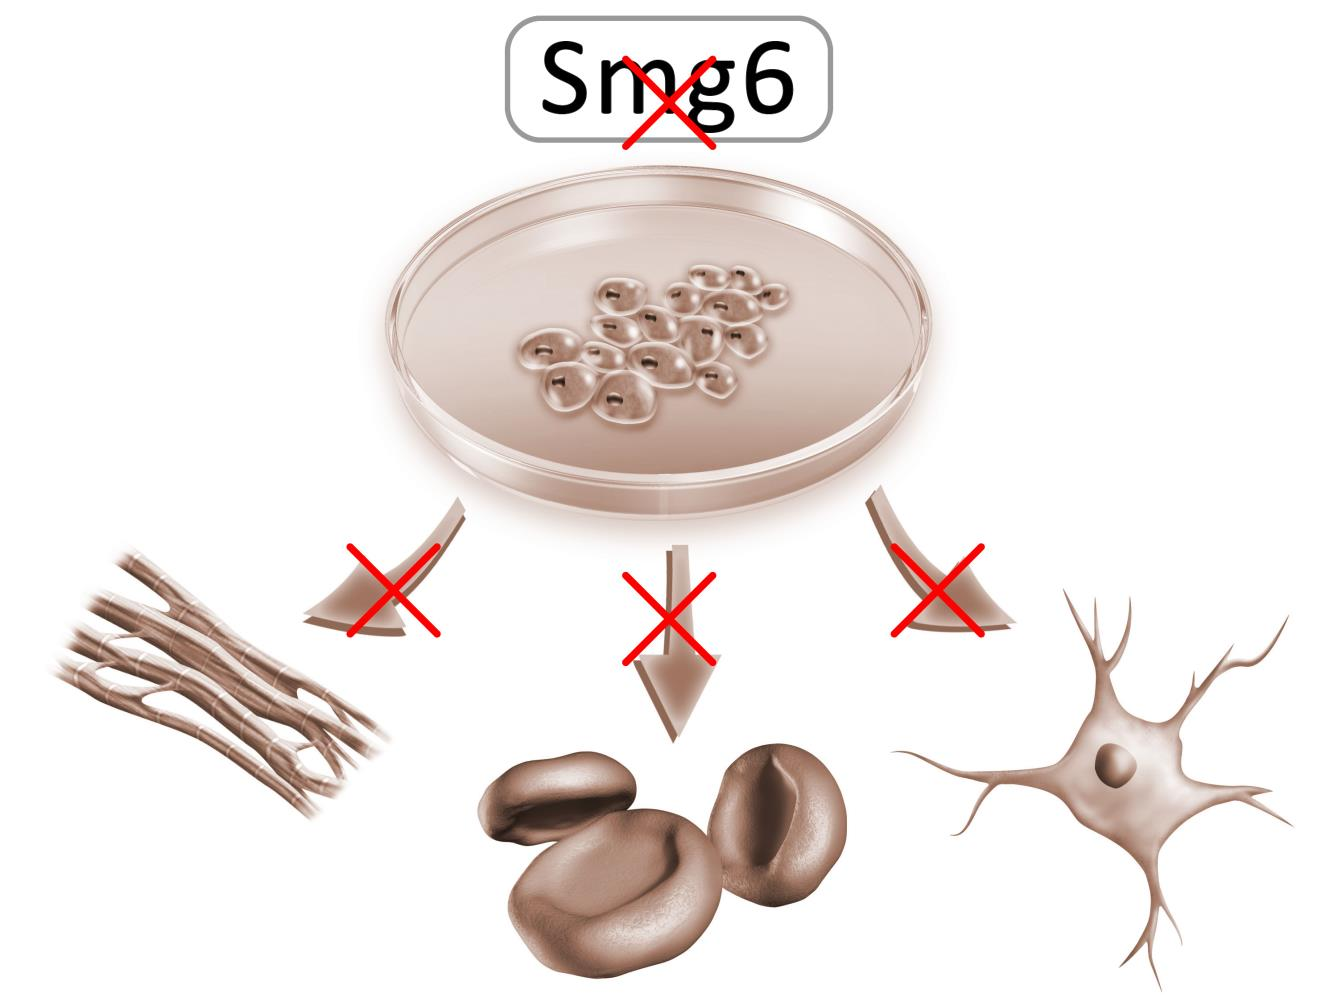 Bild 1 Der Verlust der Endonuklease Smg6 des NMD-Kontrollmechanismus hat Einfluss auf die embryonale Entwicklung, denn er blockiert die Differenzierung embryonaler Stammzellen.